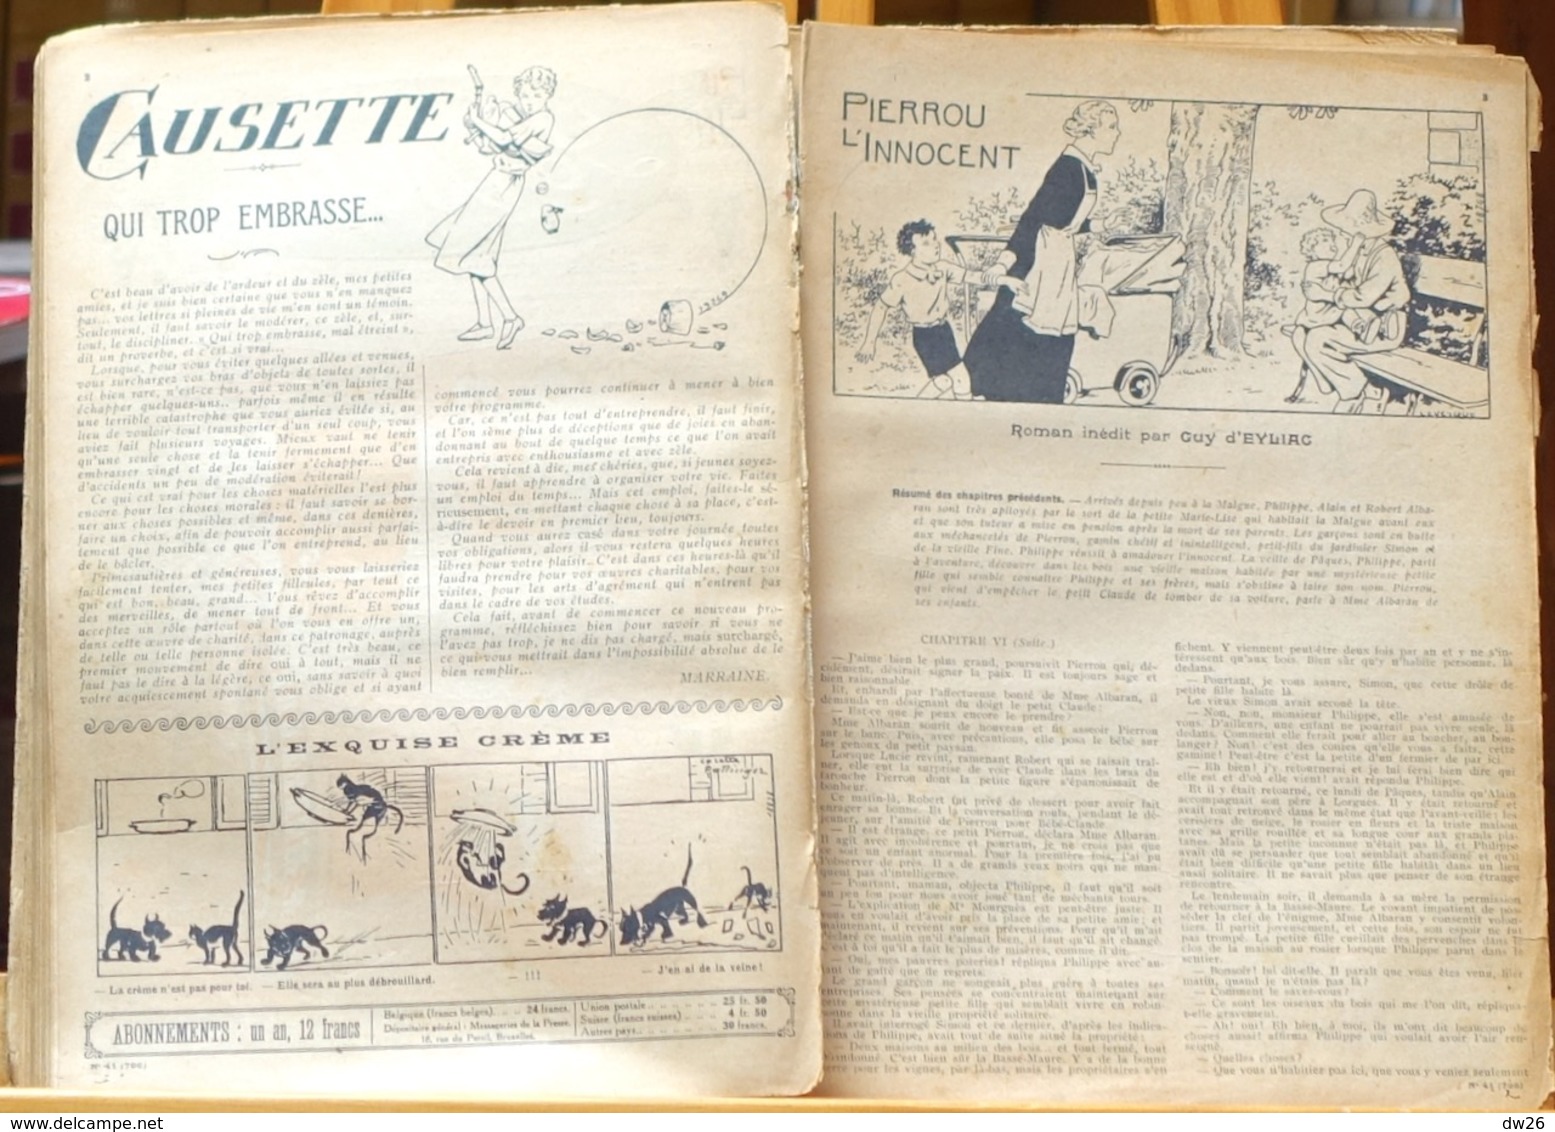 Album XIX De Lisette: Perdue Dans La Neige (Roman Complet) - Recueil Relié De 28 Numéros (n° 25 à 52) 1936 - Other & Unclassified